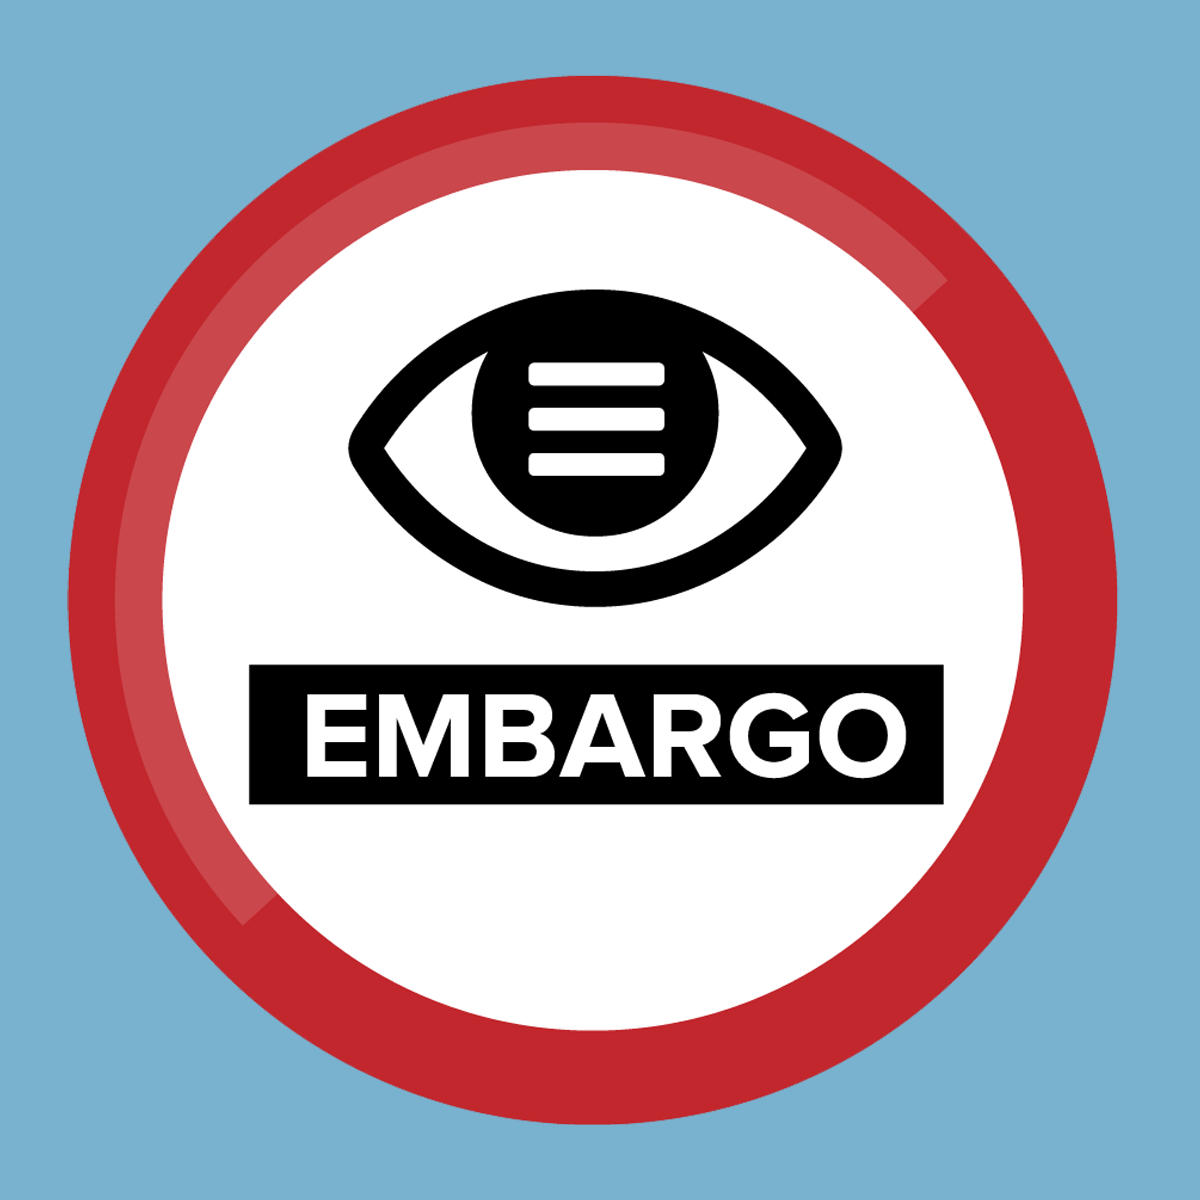 Embargo Shield